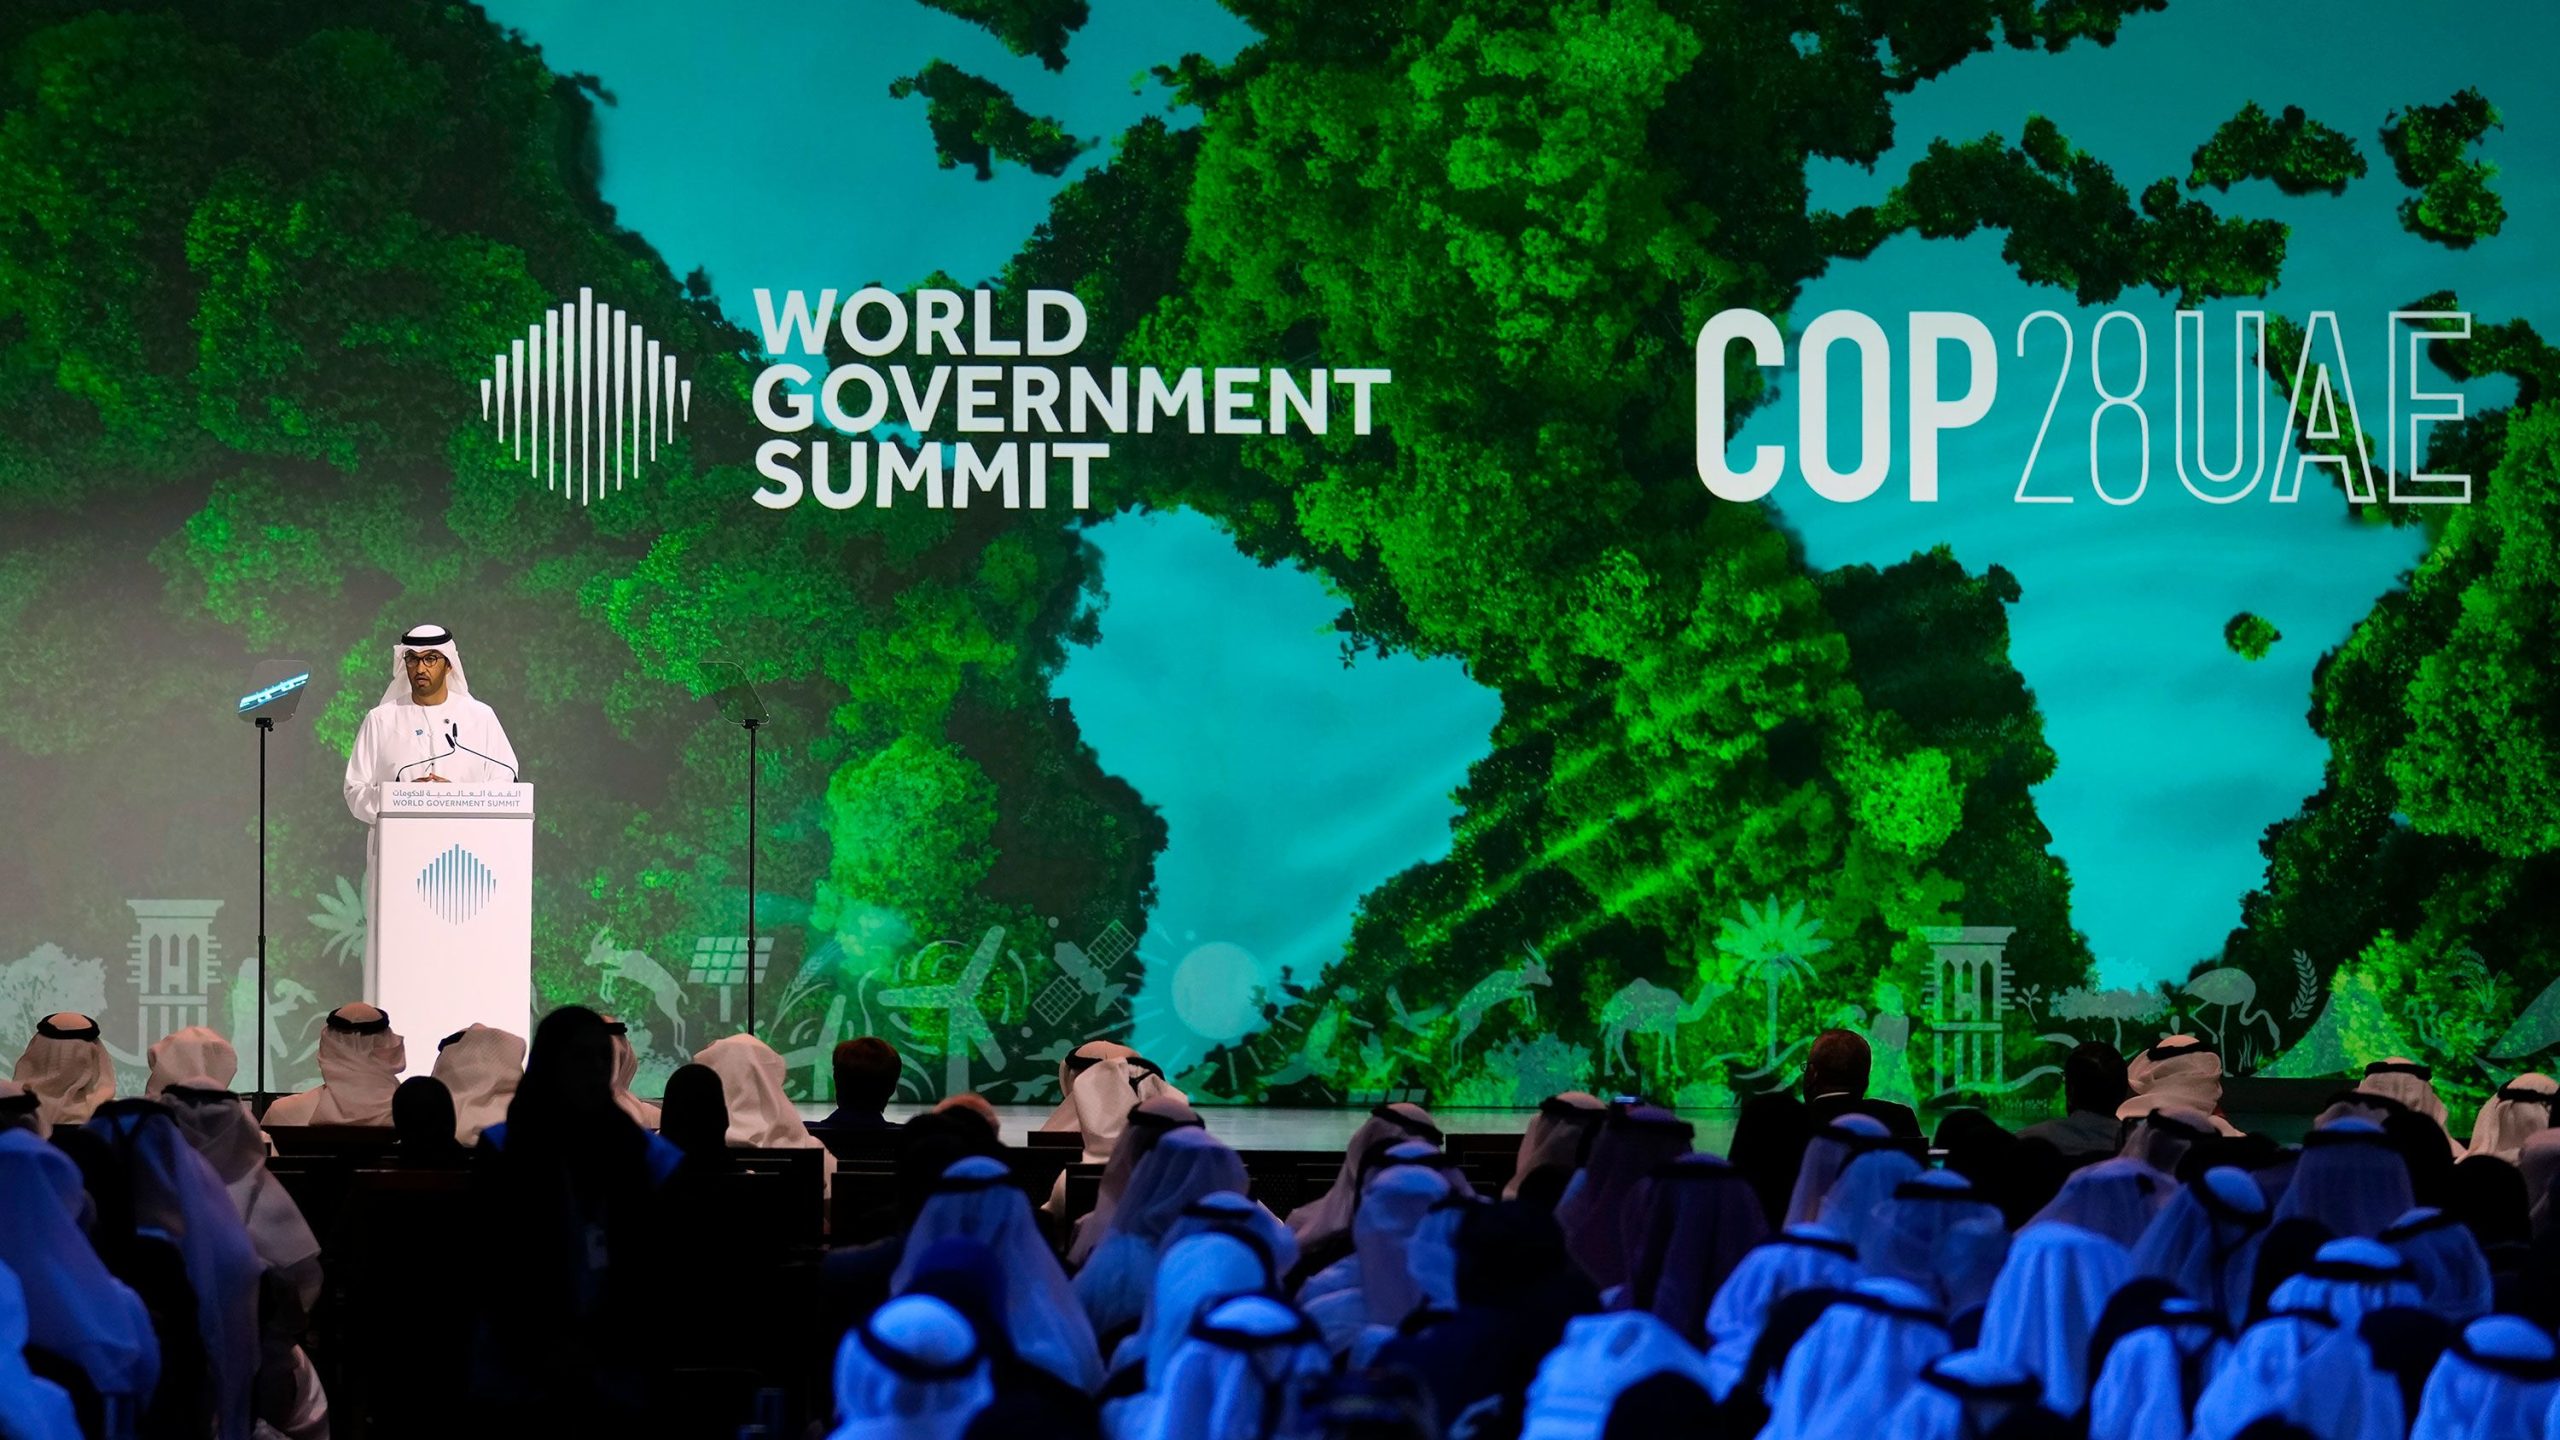 Ambiente/COP28: Os Emirados Árabes Unidos vão aproveitar a COP28 para negociar contratos de gás e petróleo